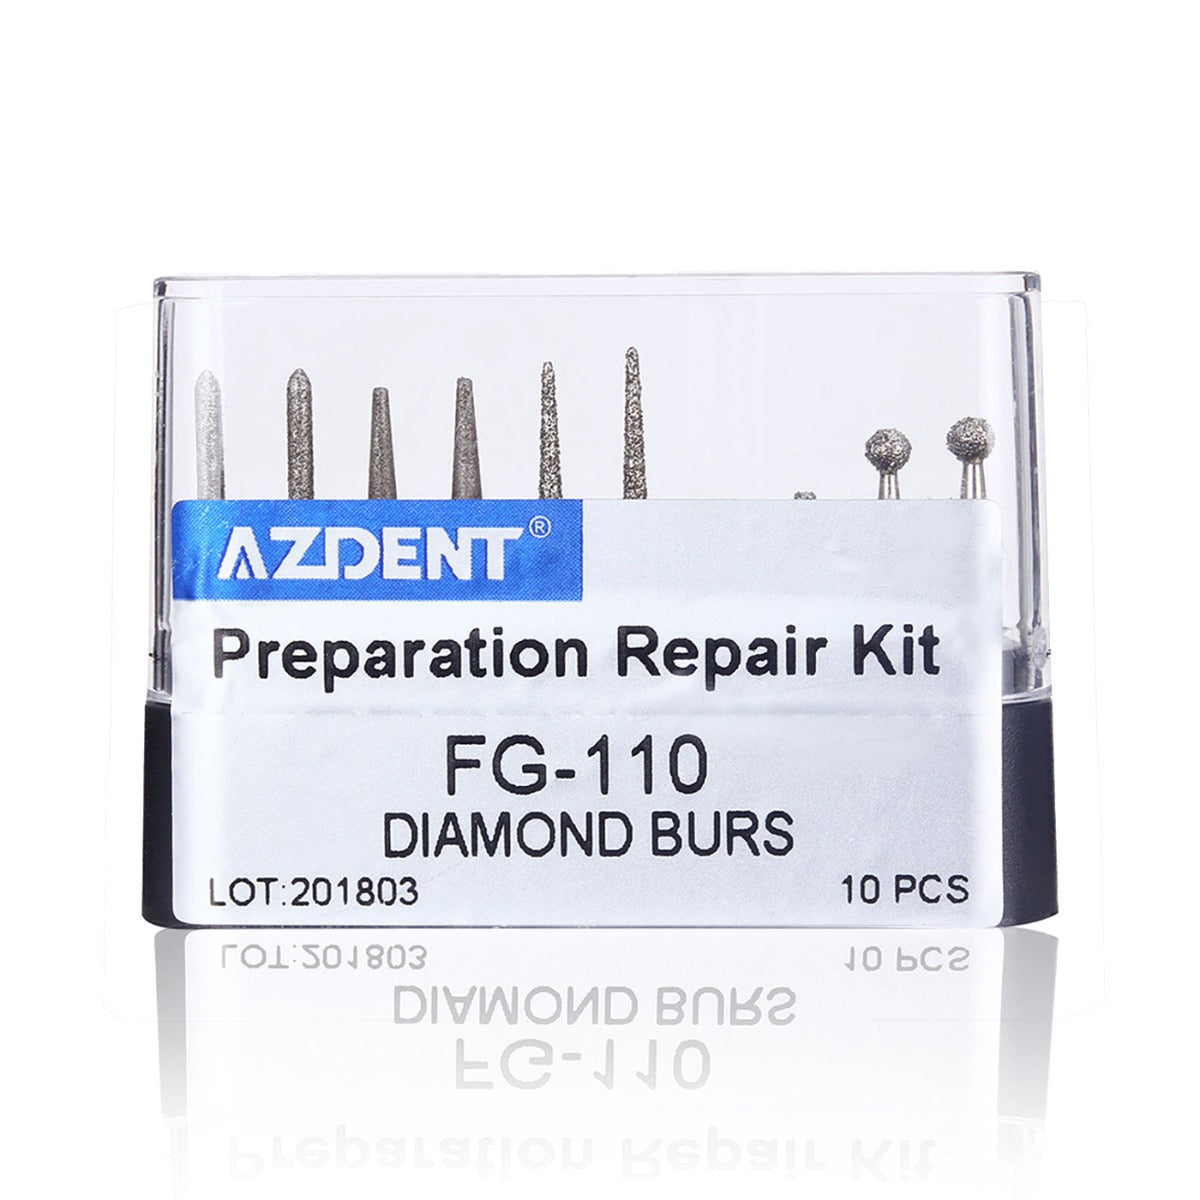 Dental Diamond Bur FG-110 Prepartion Repair Kit 10pcs/Kit - pairaydental.com